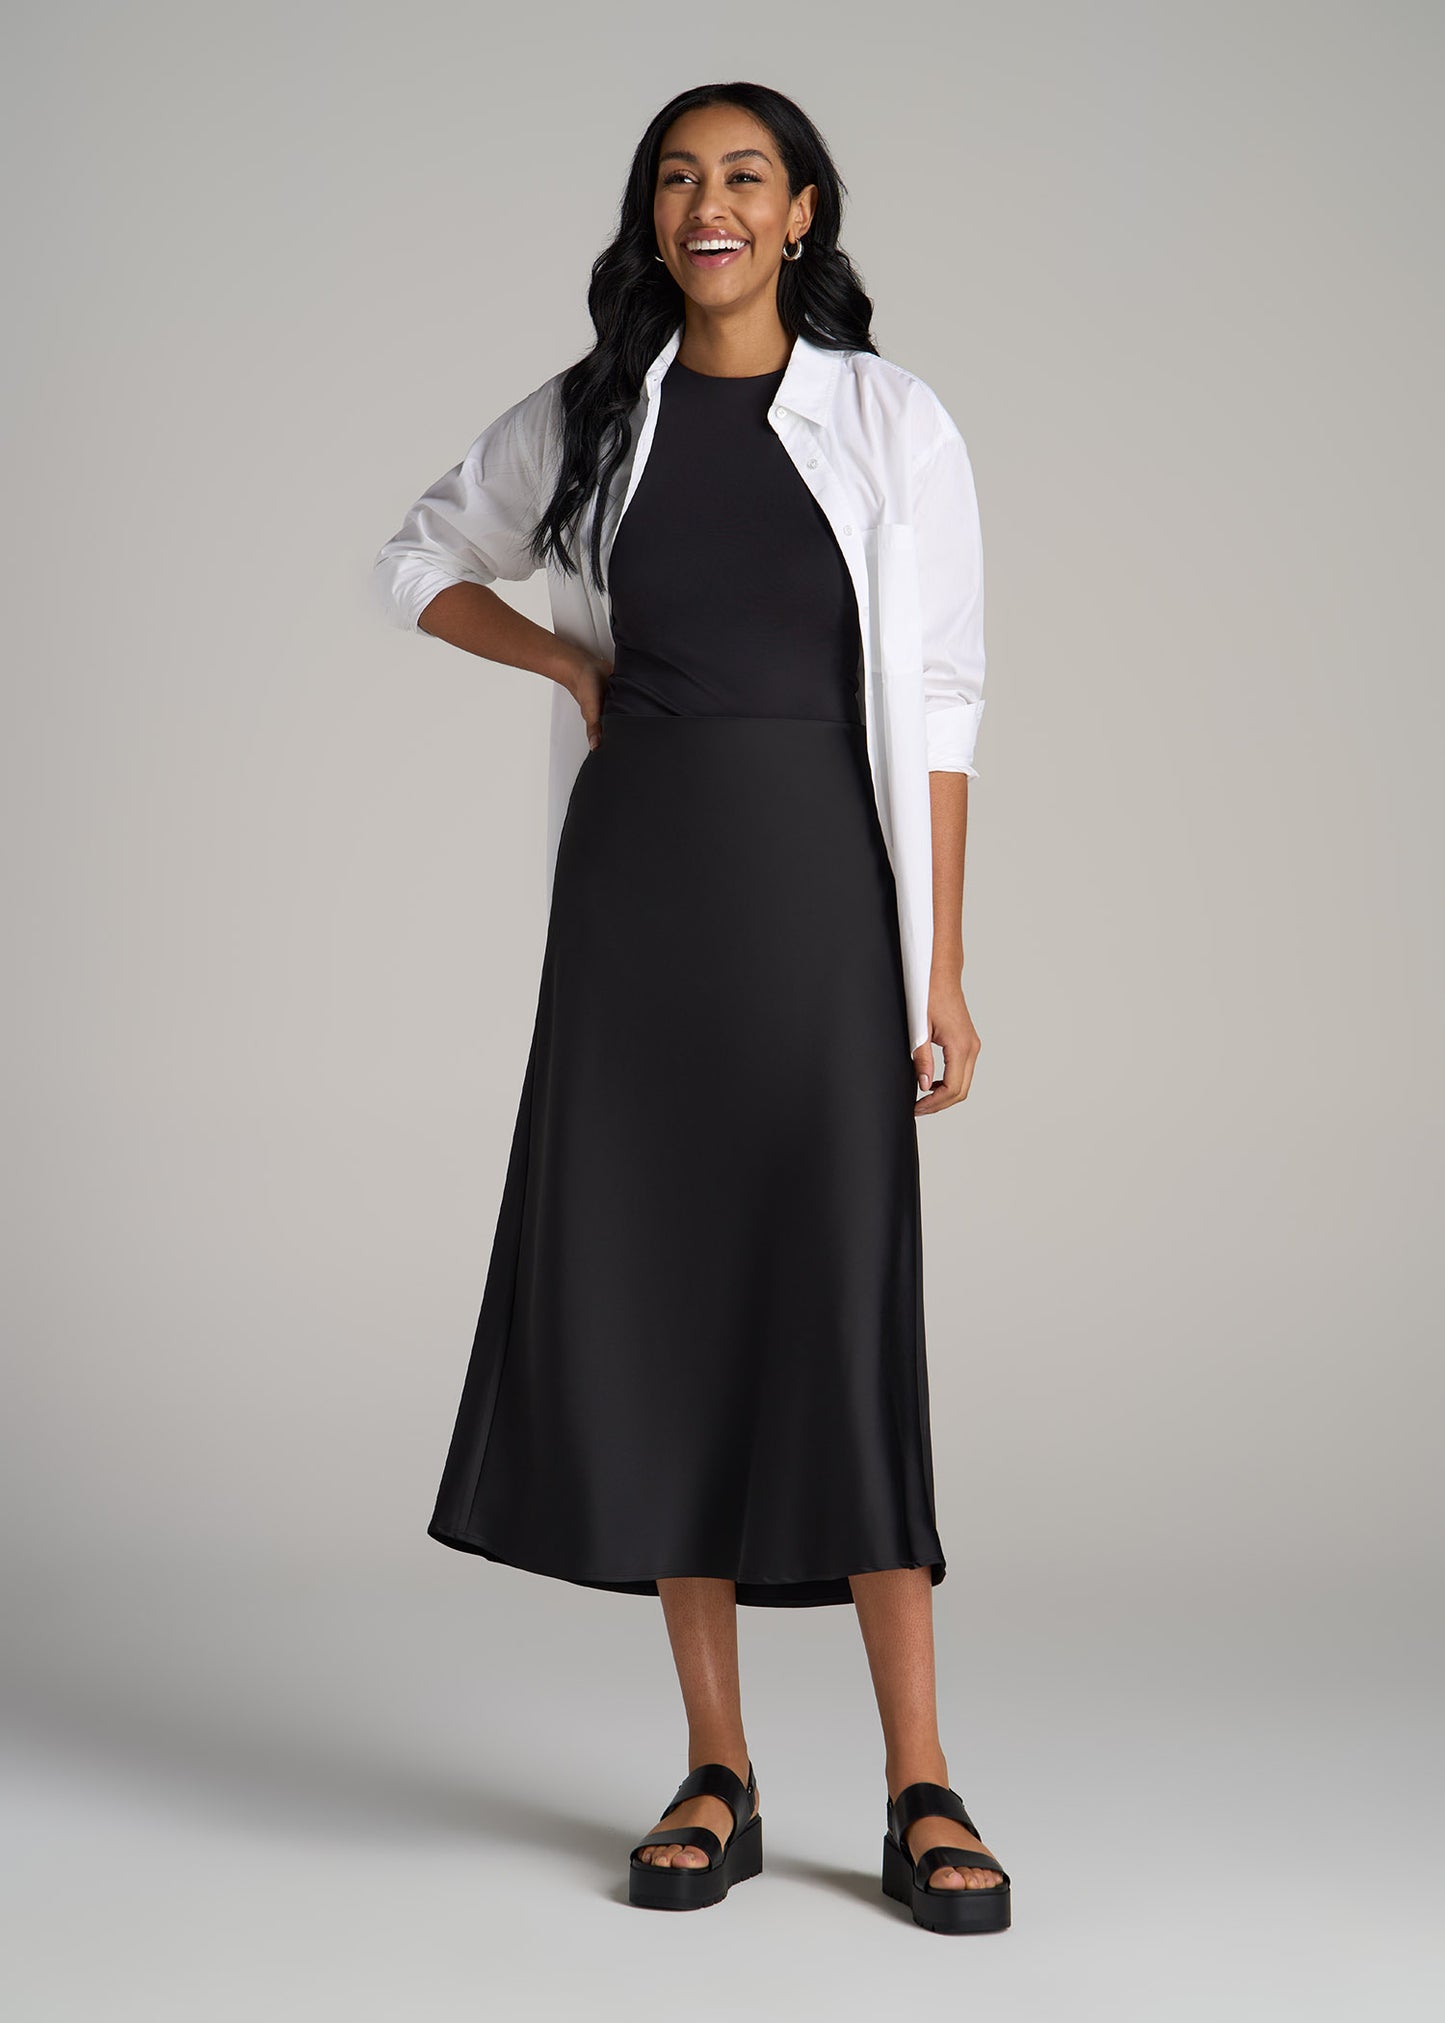 Pull-On Satin Midi Skirt for Tall Women in Black